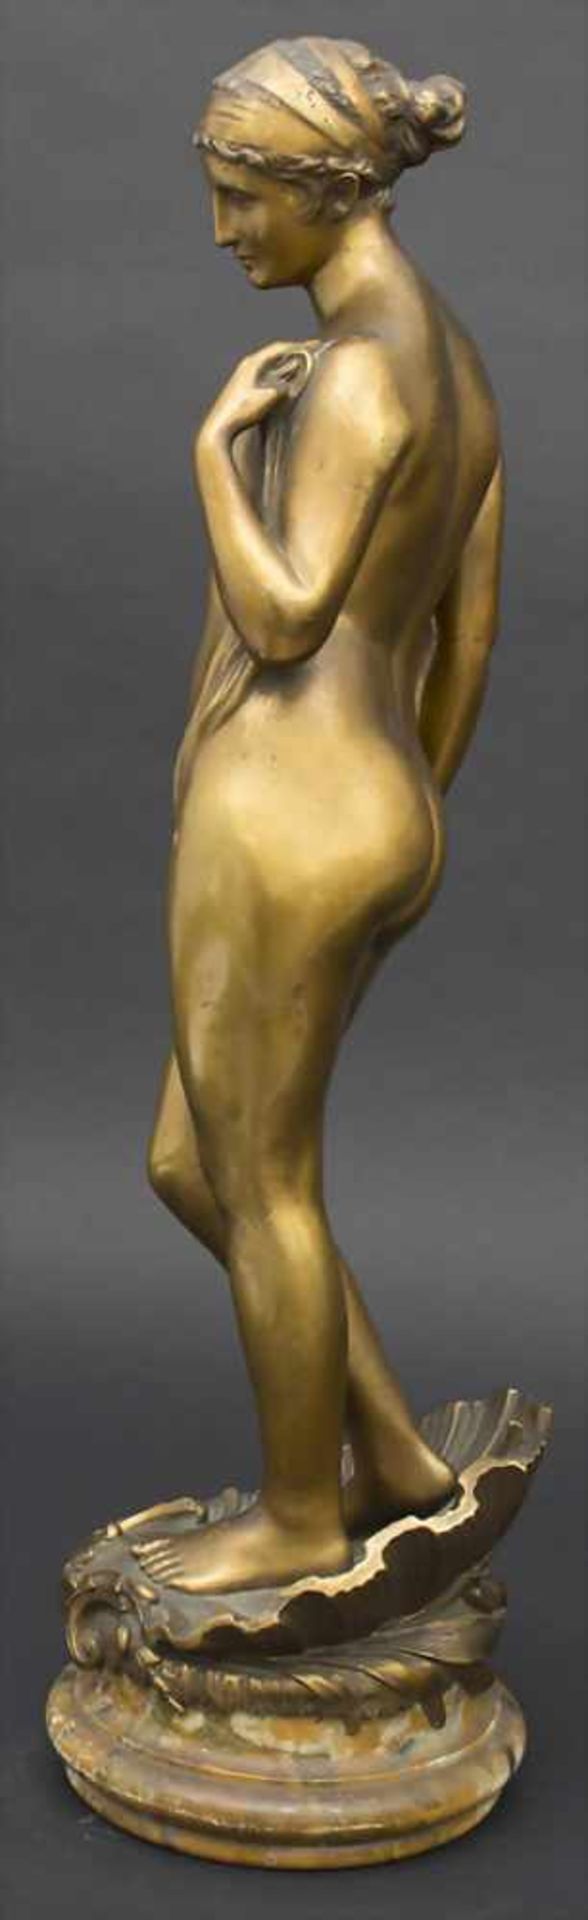 Marcel Rau 1886-1966, Die Geburt der Venus / The birth of Venus, Marcel Rau, 1917Material: Bronze, - Image 4 of 8